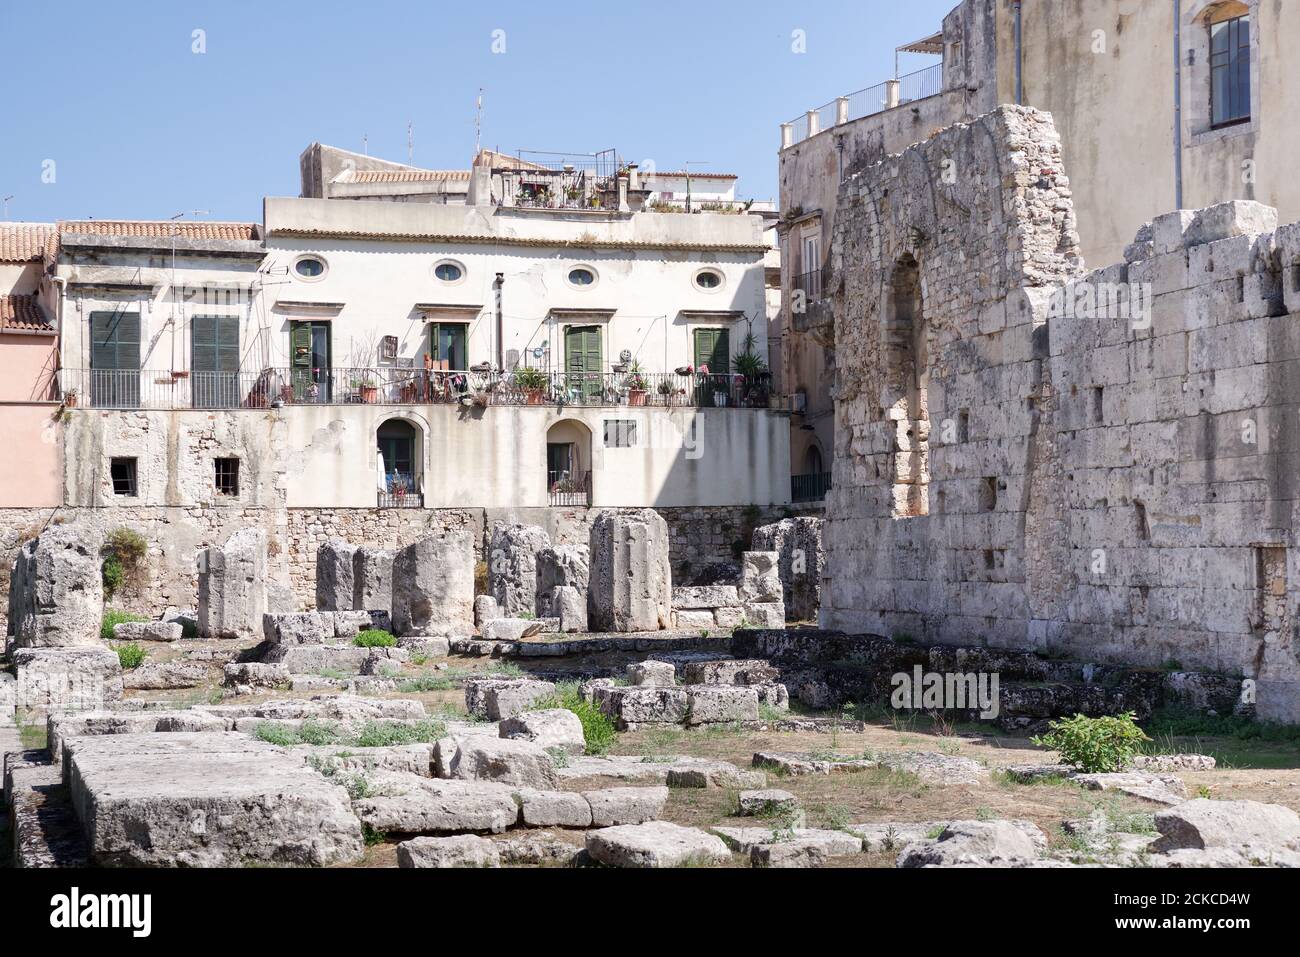 Ruinen des Tempels von Apollo, eines der wichtigsten antiken griechischen Denkmäler in Ortygia - Sizilien, Italien Stockfoto